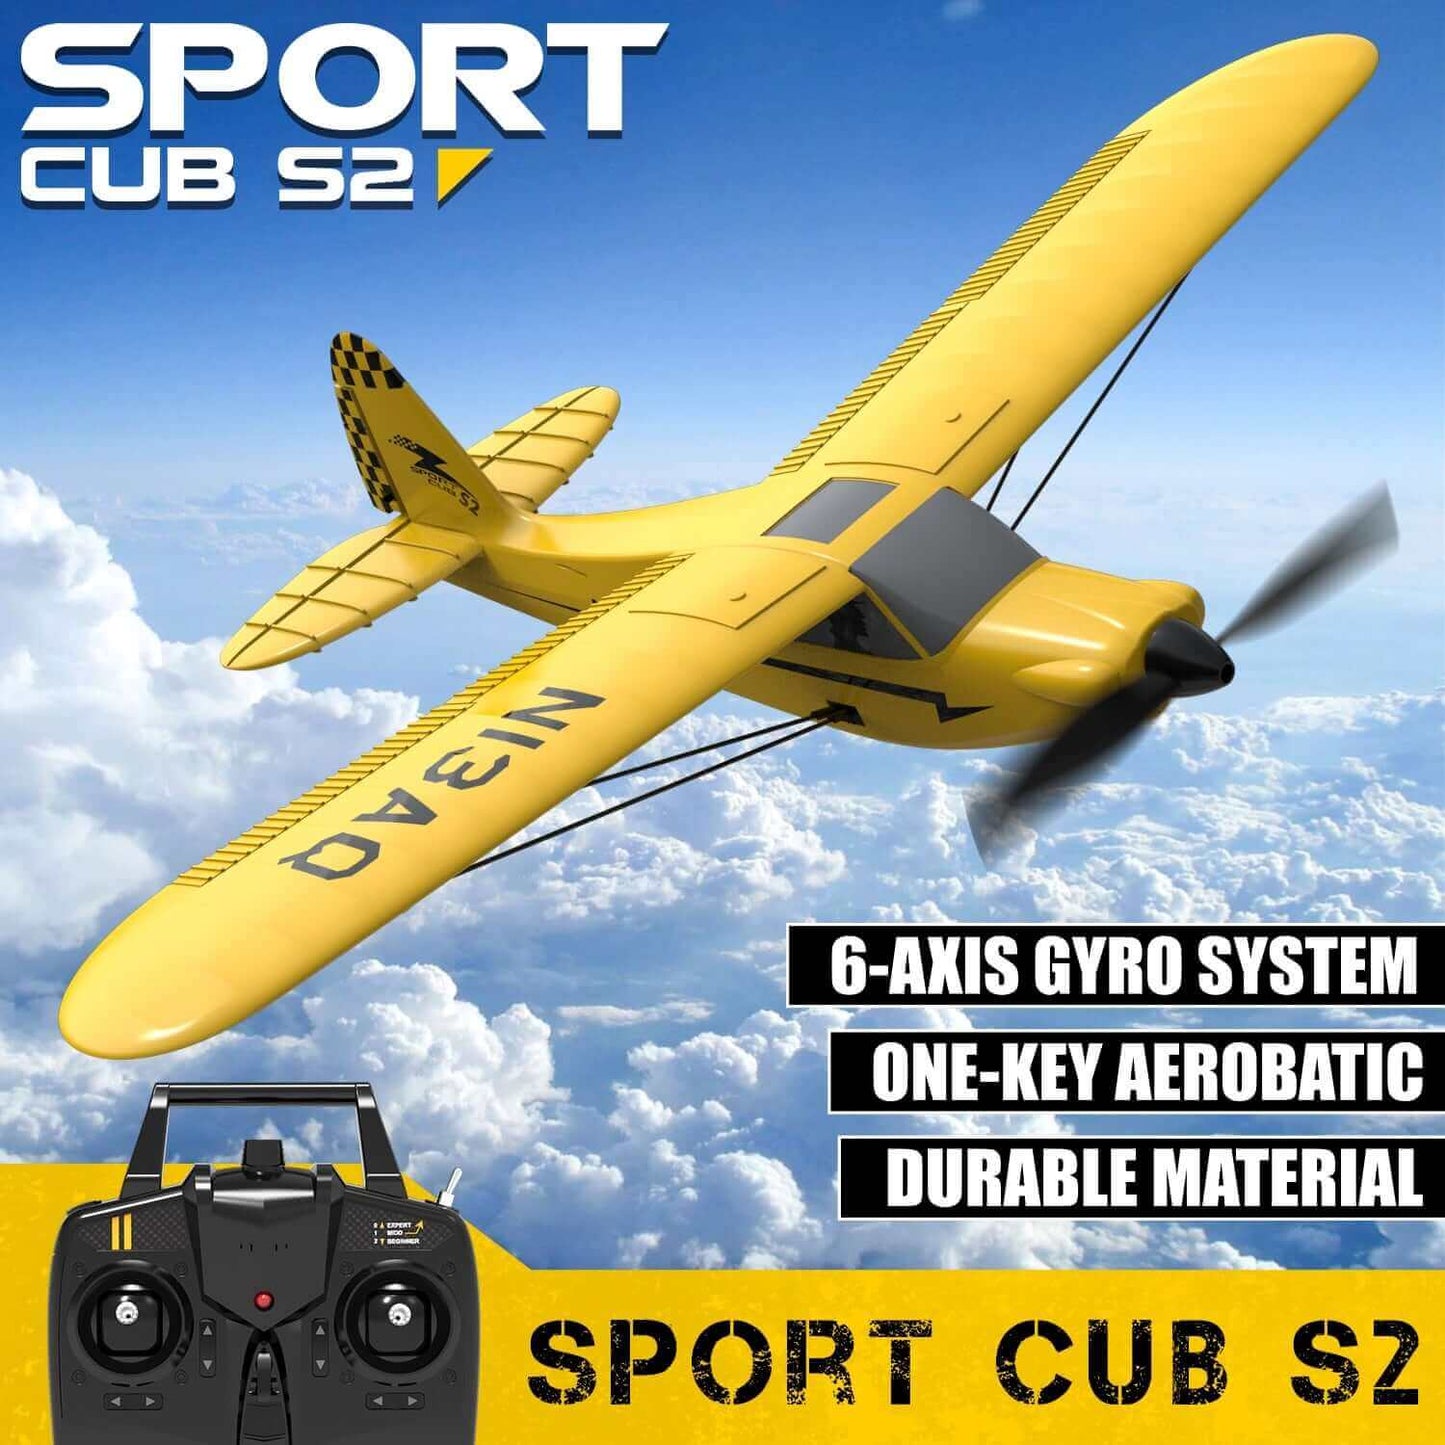 Avion RC Sport Cub S2 avec stabilisateur gyroscopique - Avion télécommandé 2.4G 3CH - Avions en mousse RTF EPP